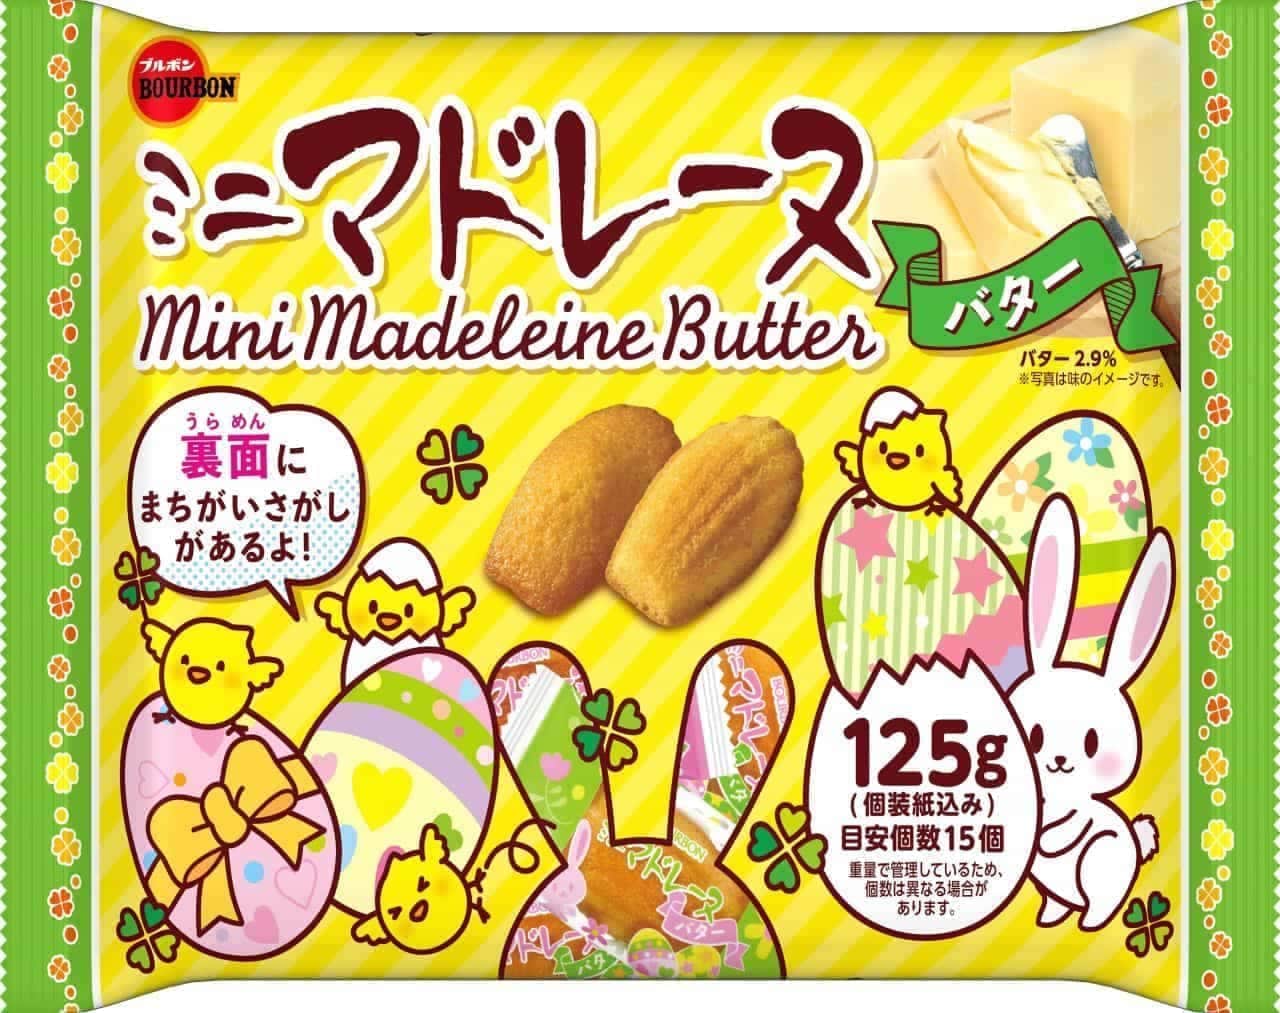 Bourbon "125g mini madeleine butter (Easter)